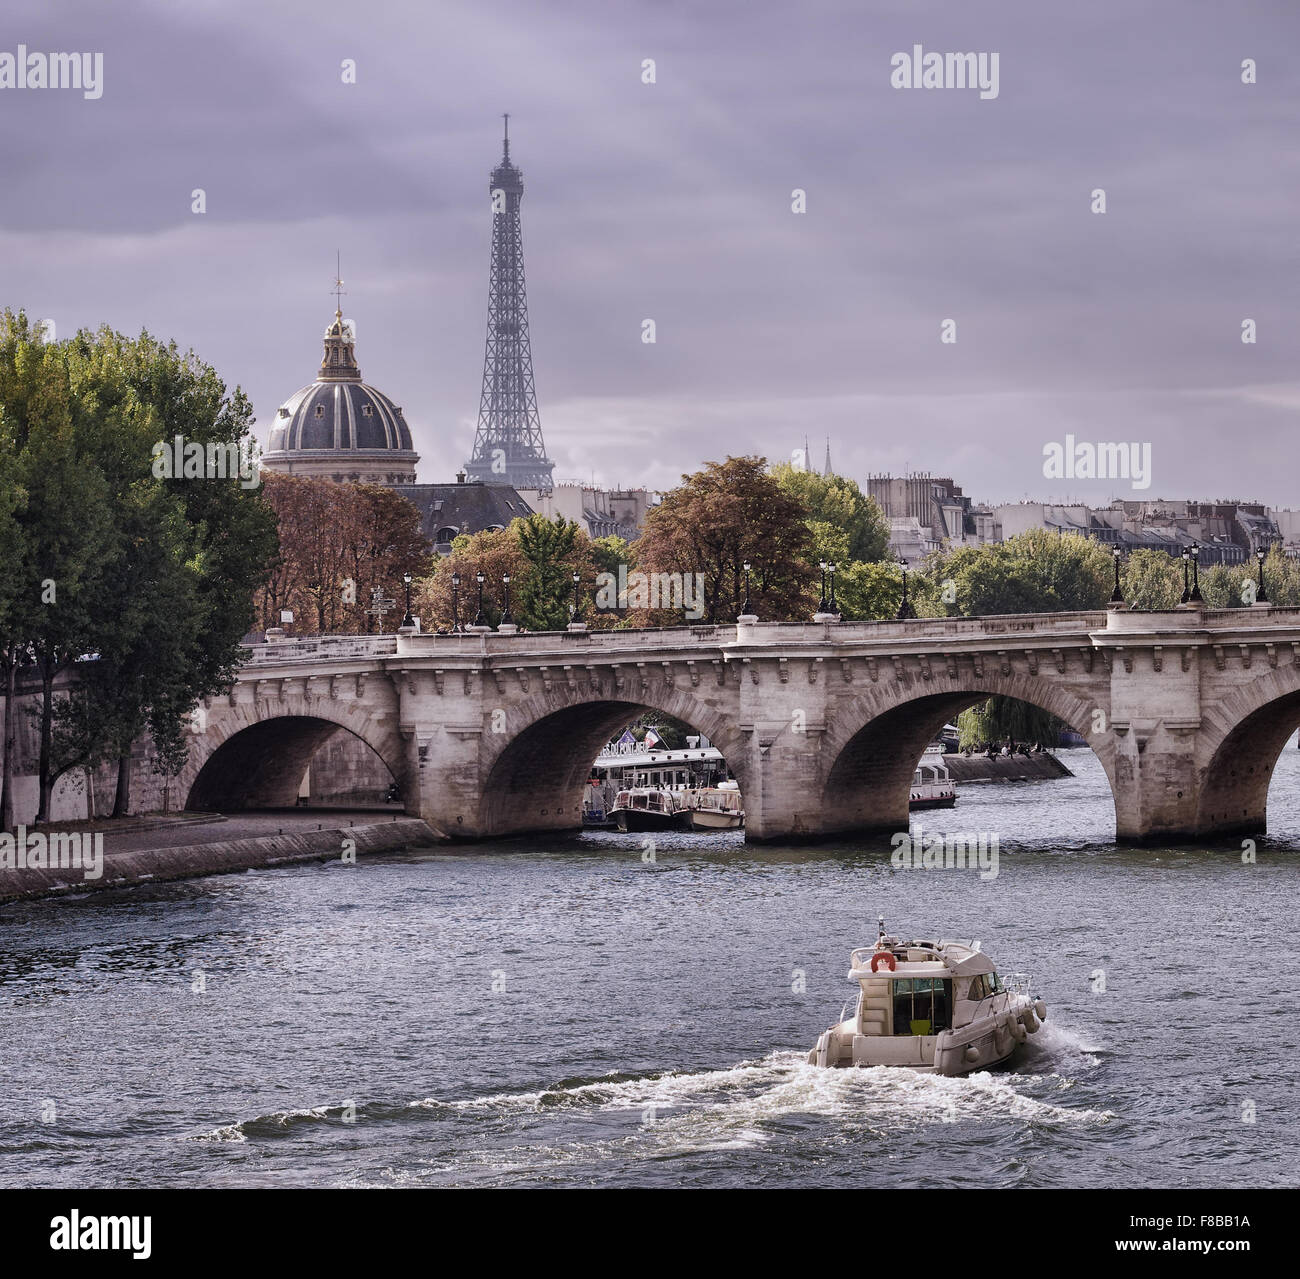 Stadtbild von Paris mit Eiffelturm, Brücke und Boot Stockfoto